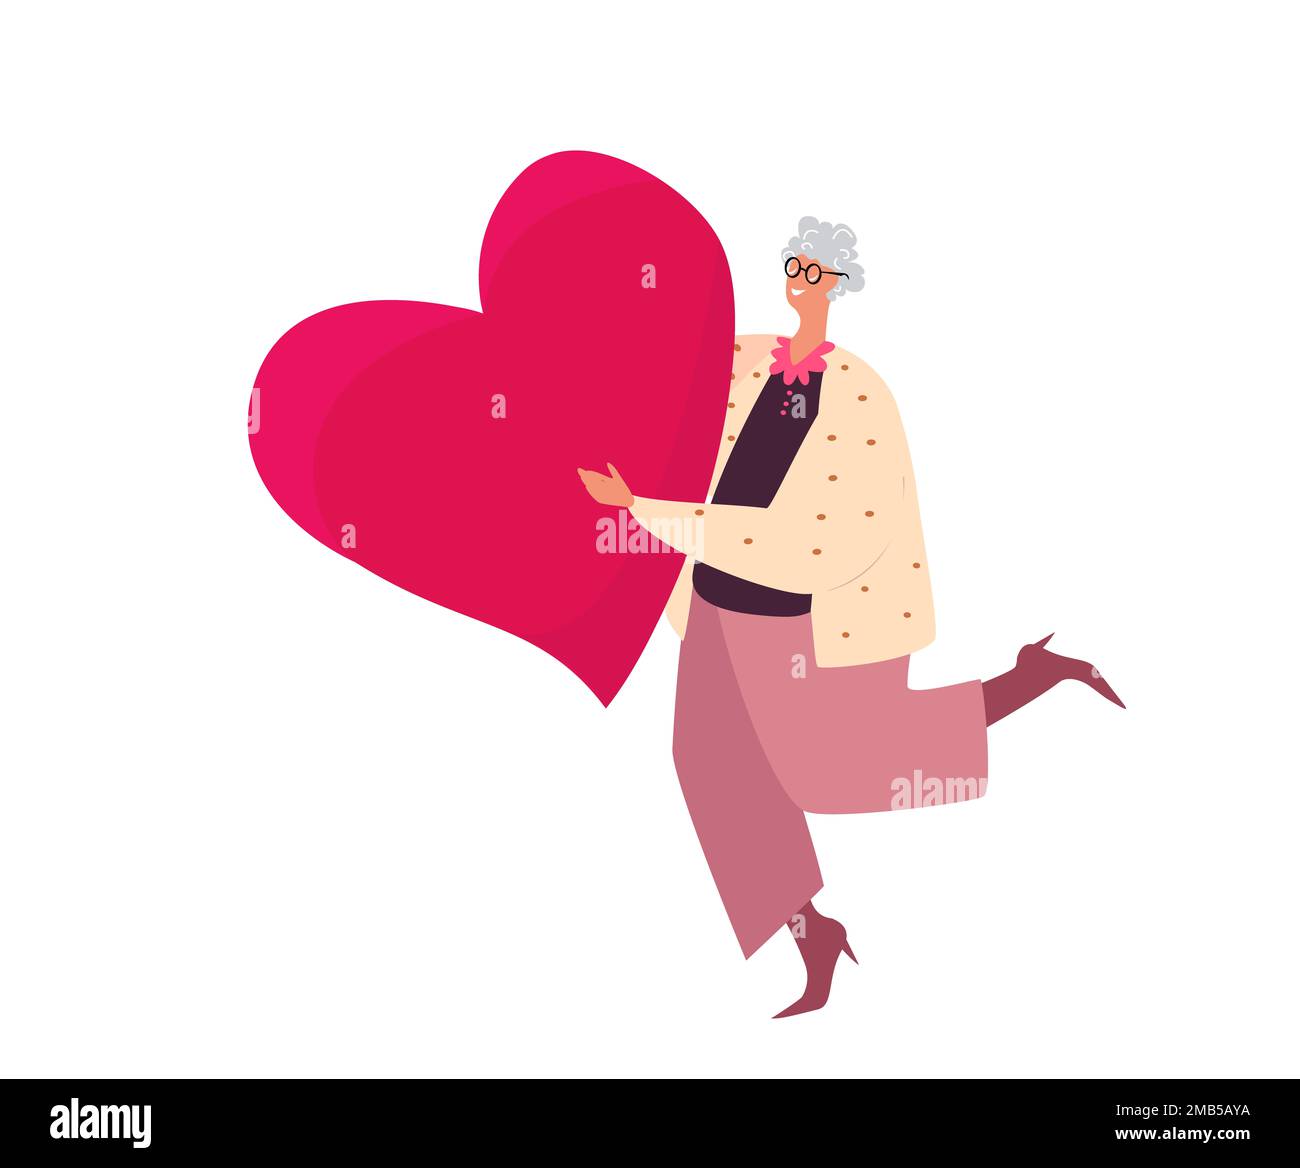 Frohe Überraschung Zum Valentinstag. Ältere Frau im Ruhestand, die ein großes Herz hat. Liebevolle ältere Person, alter Charakter gehen zu Dating, Senioren lieben, Ro Stockfoto